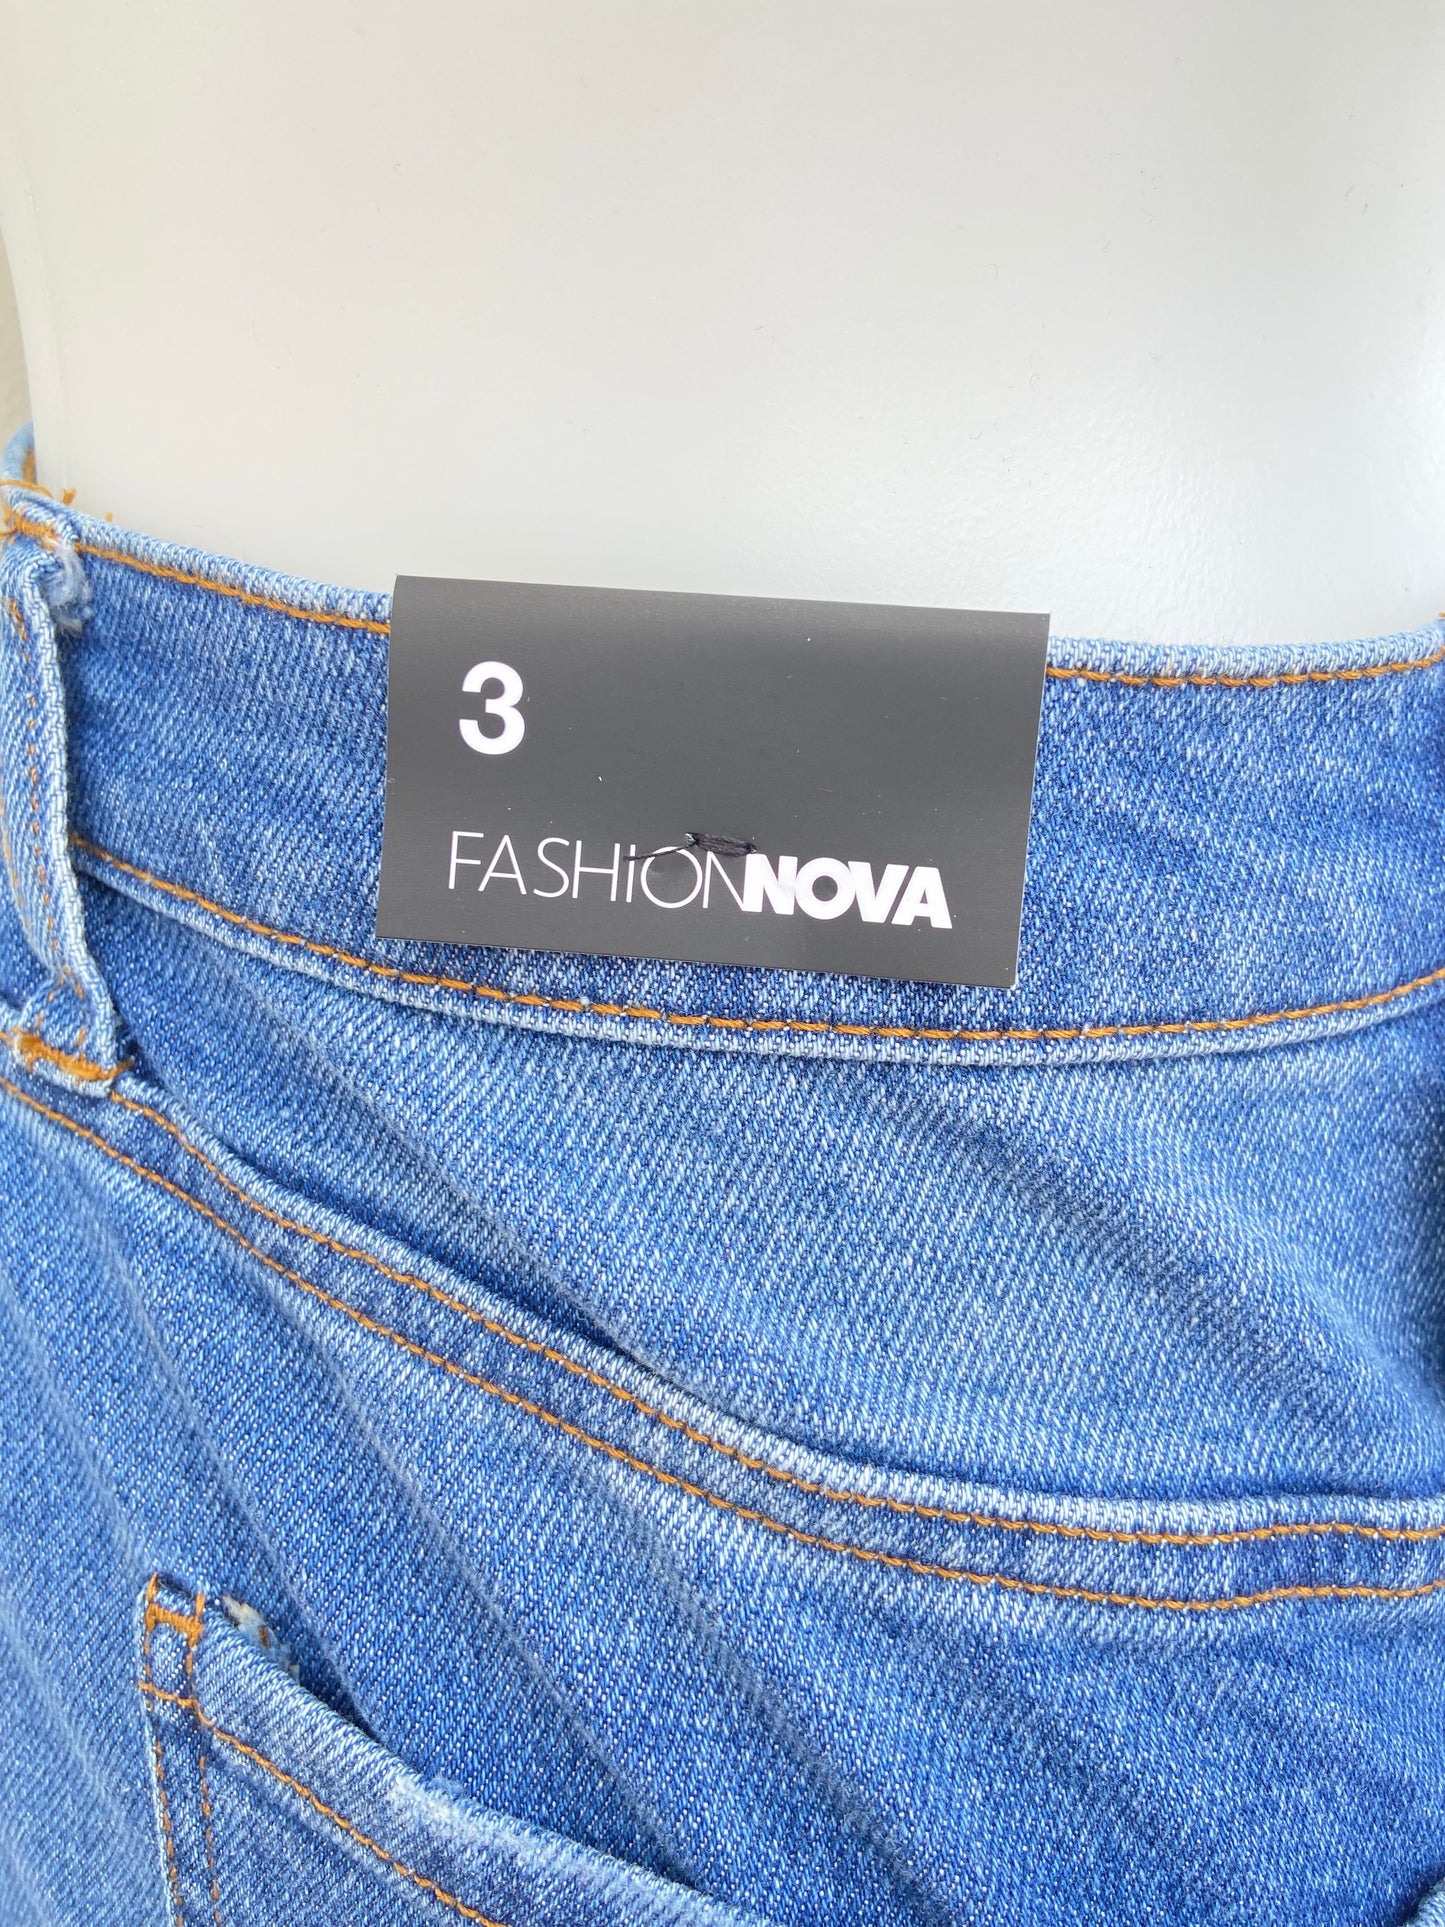 Pantalón Jean FASHION NOVA original azul con rasgados, OH SO 90’s estilo mom.